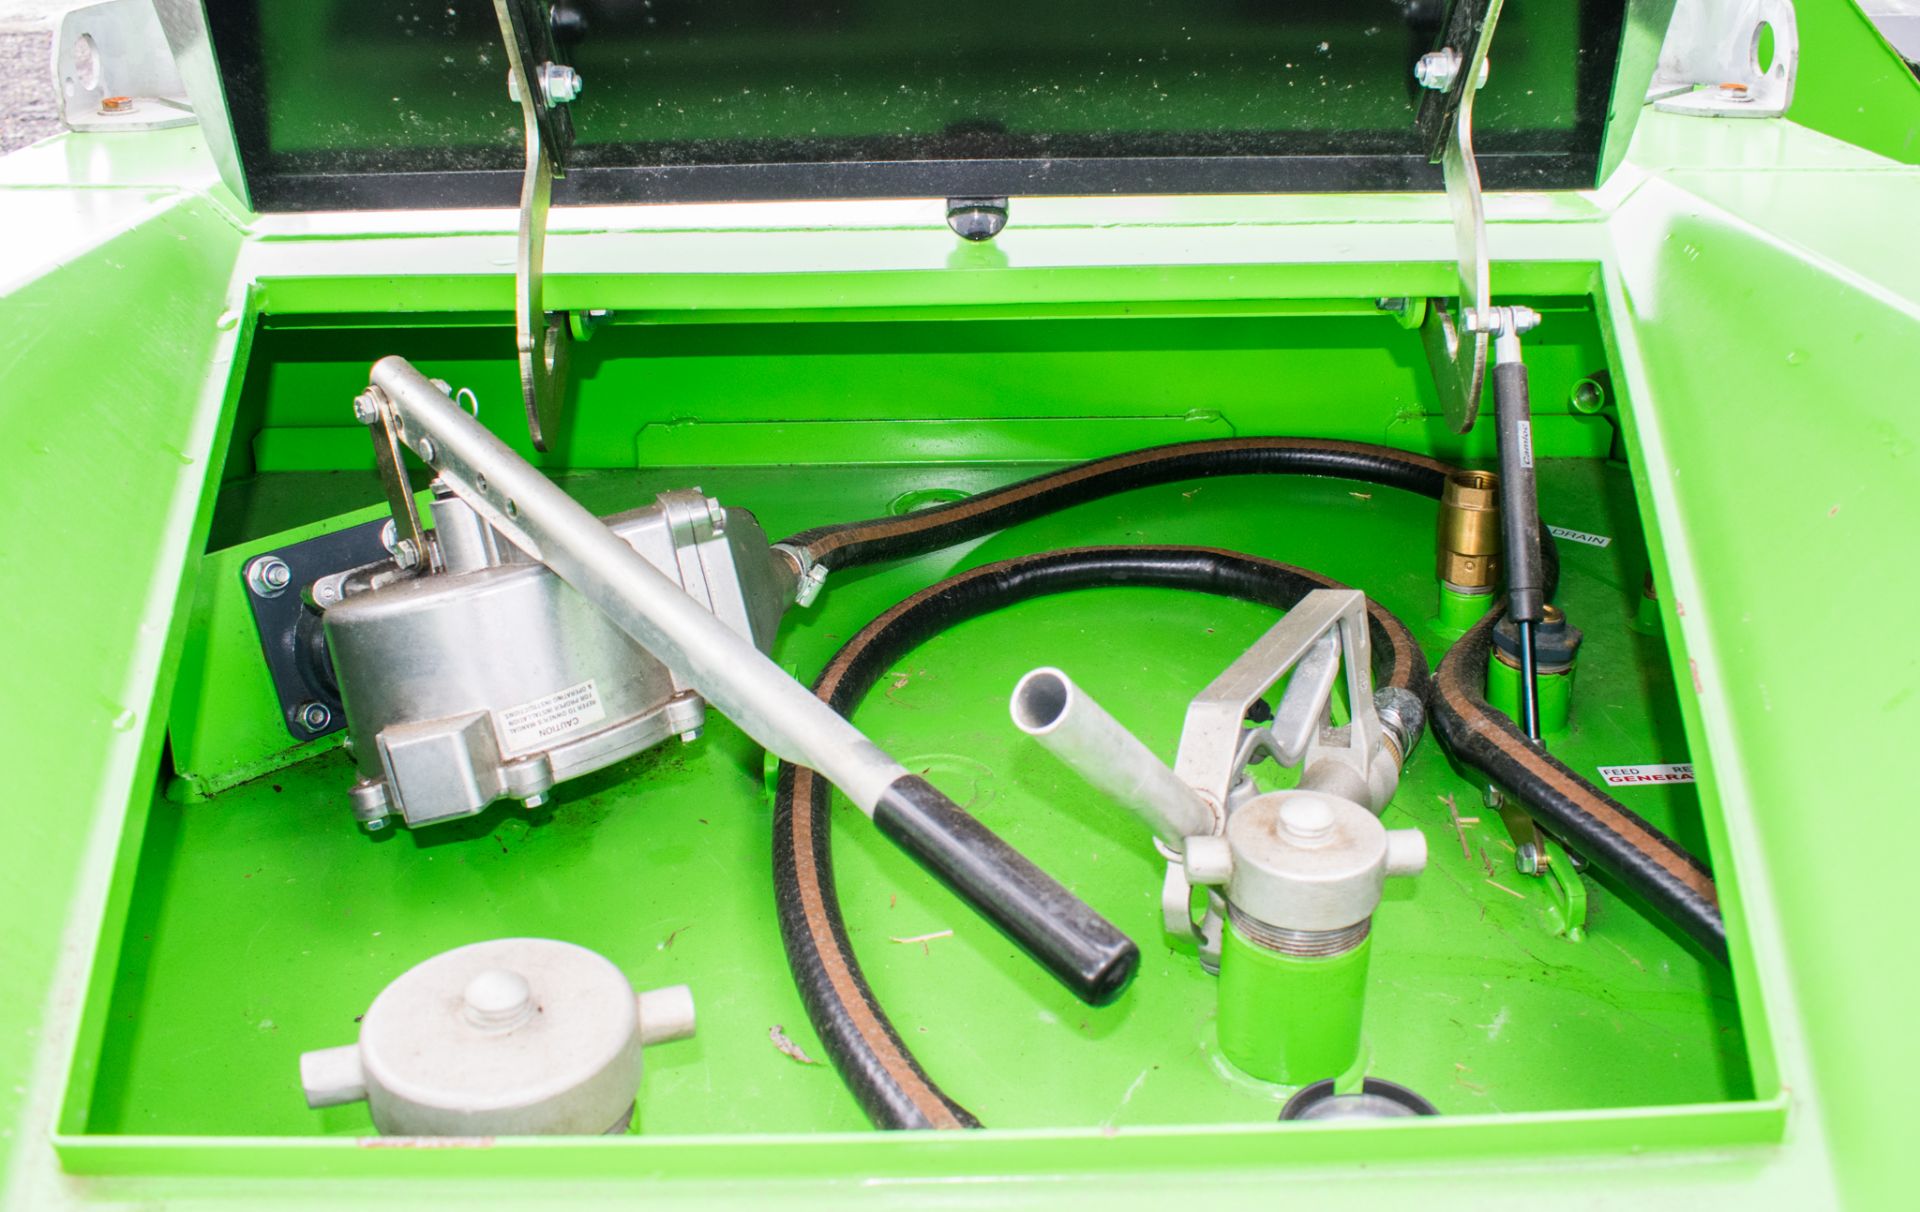 Cross Plant 900 litre fuel cube bunded fuel bowser c/w manual pump, delivery hose & nozzle EN1698 - Image 2 of 2